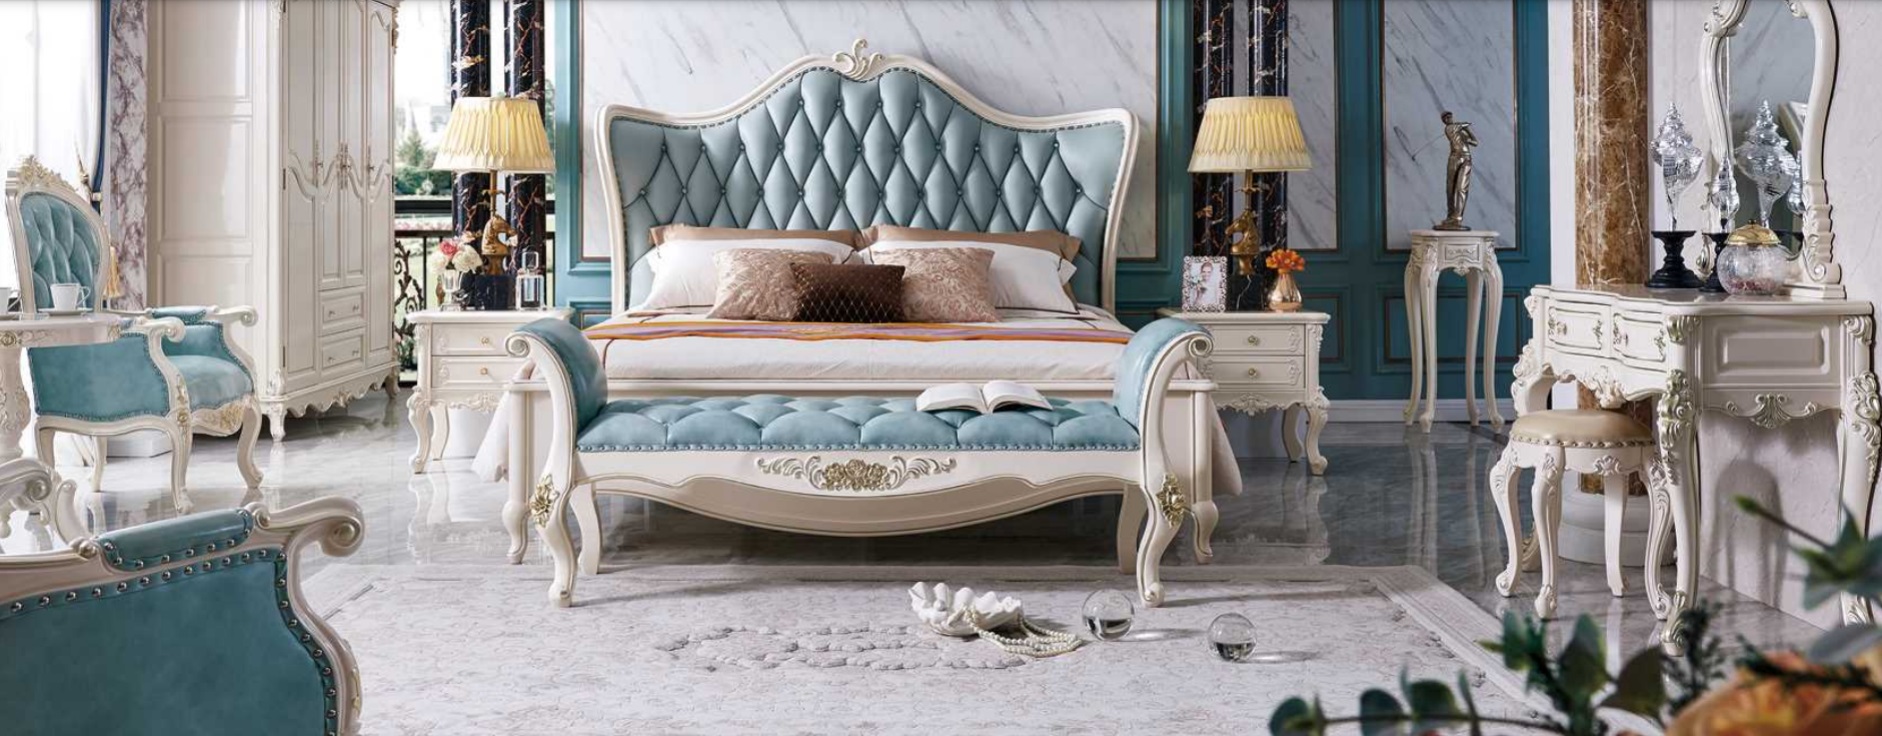 Klassisches Bett Luxus Betten Chesterfield Möbel Schlafzimmer Barock Hotel Leder